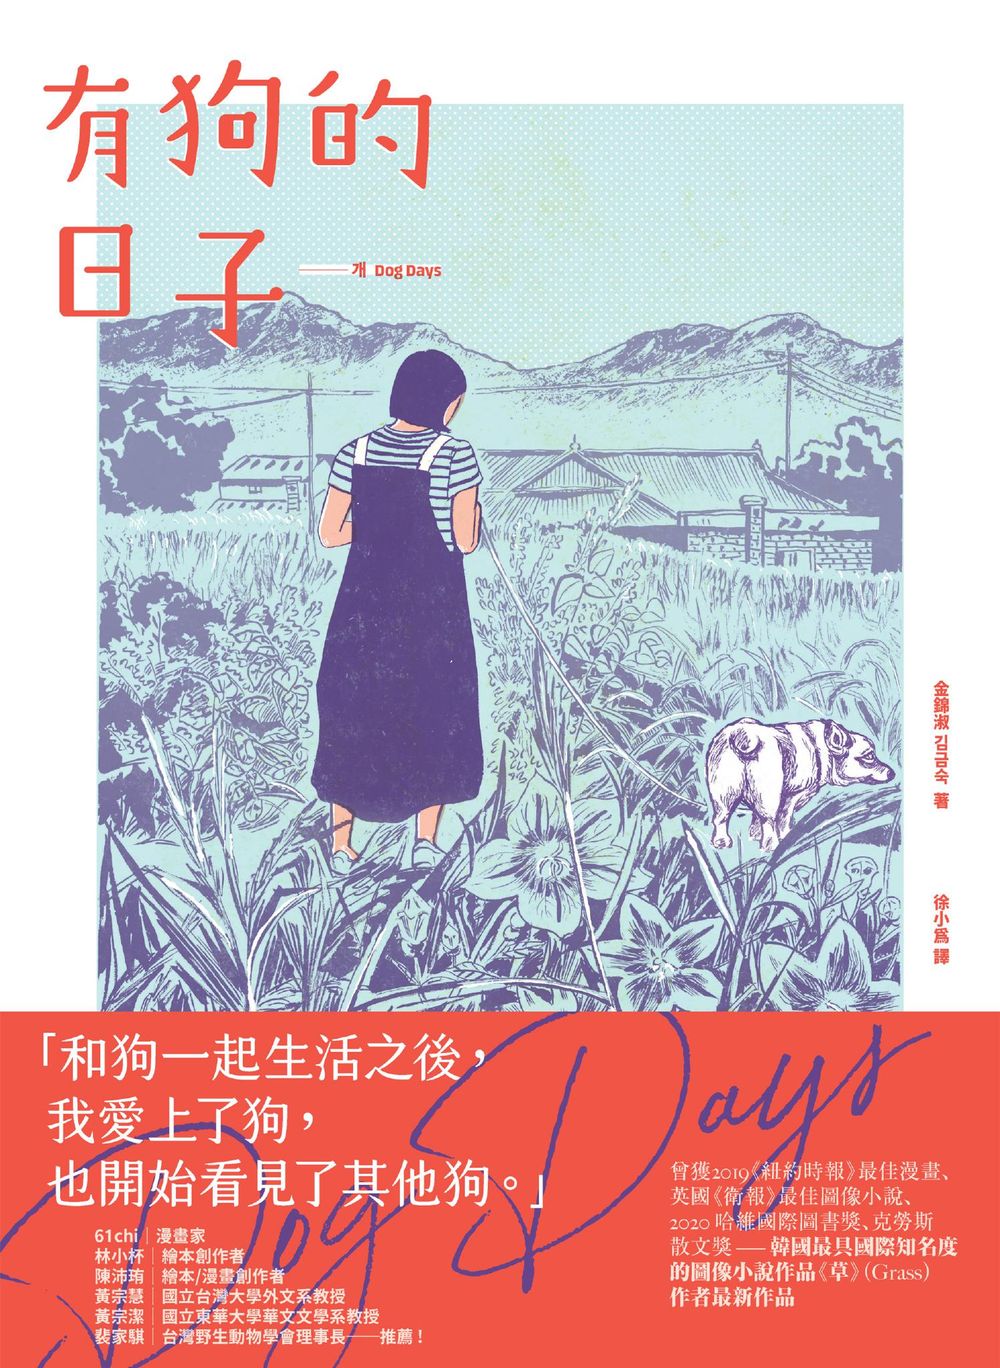 有狗的日子【韓國最具國際知名度的圖像小說作品《草》(Grass)作者最新作品】 (電子書)